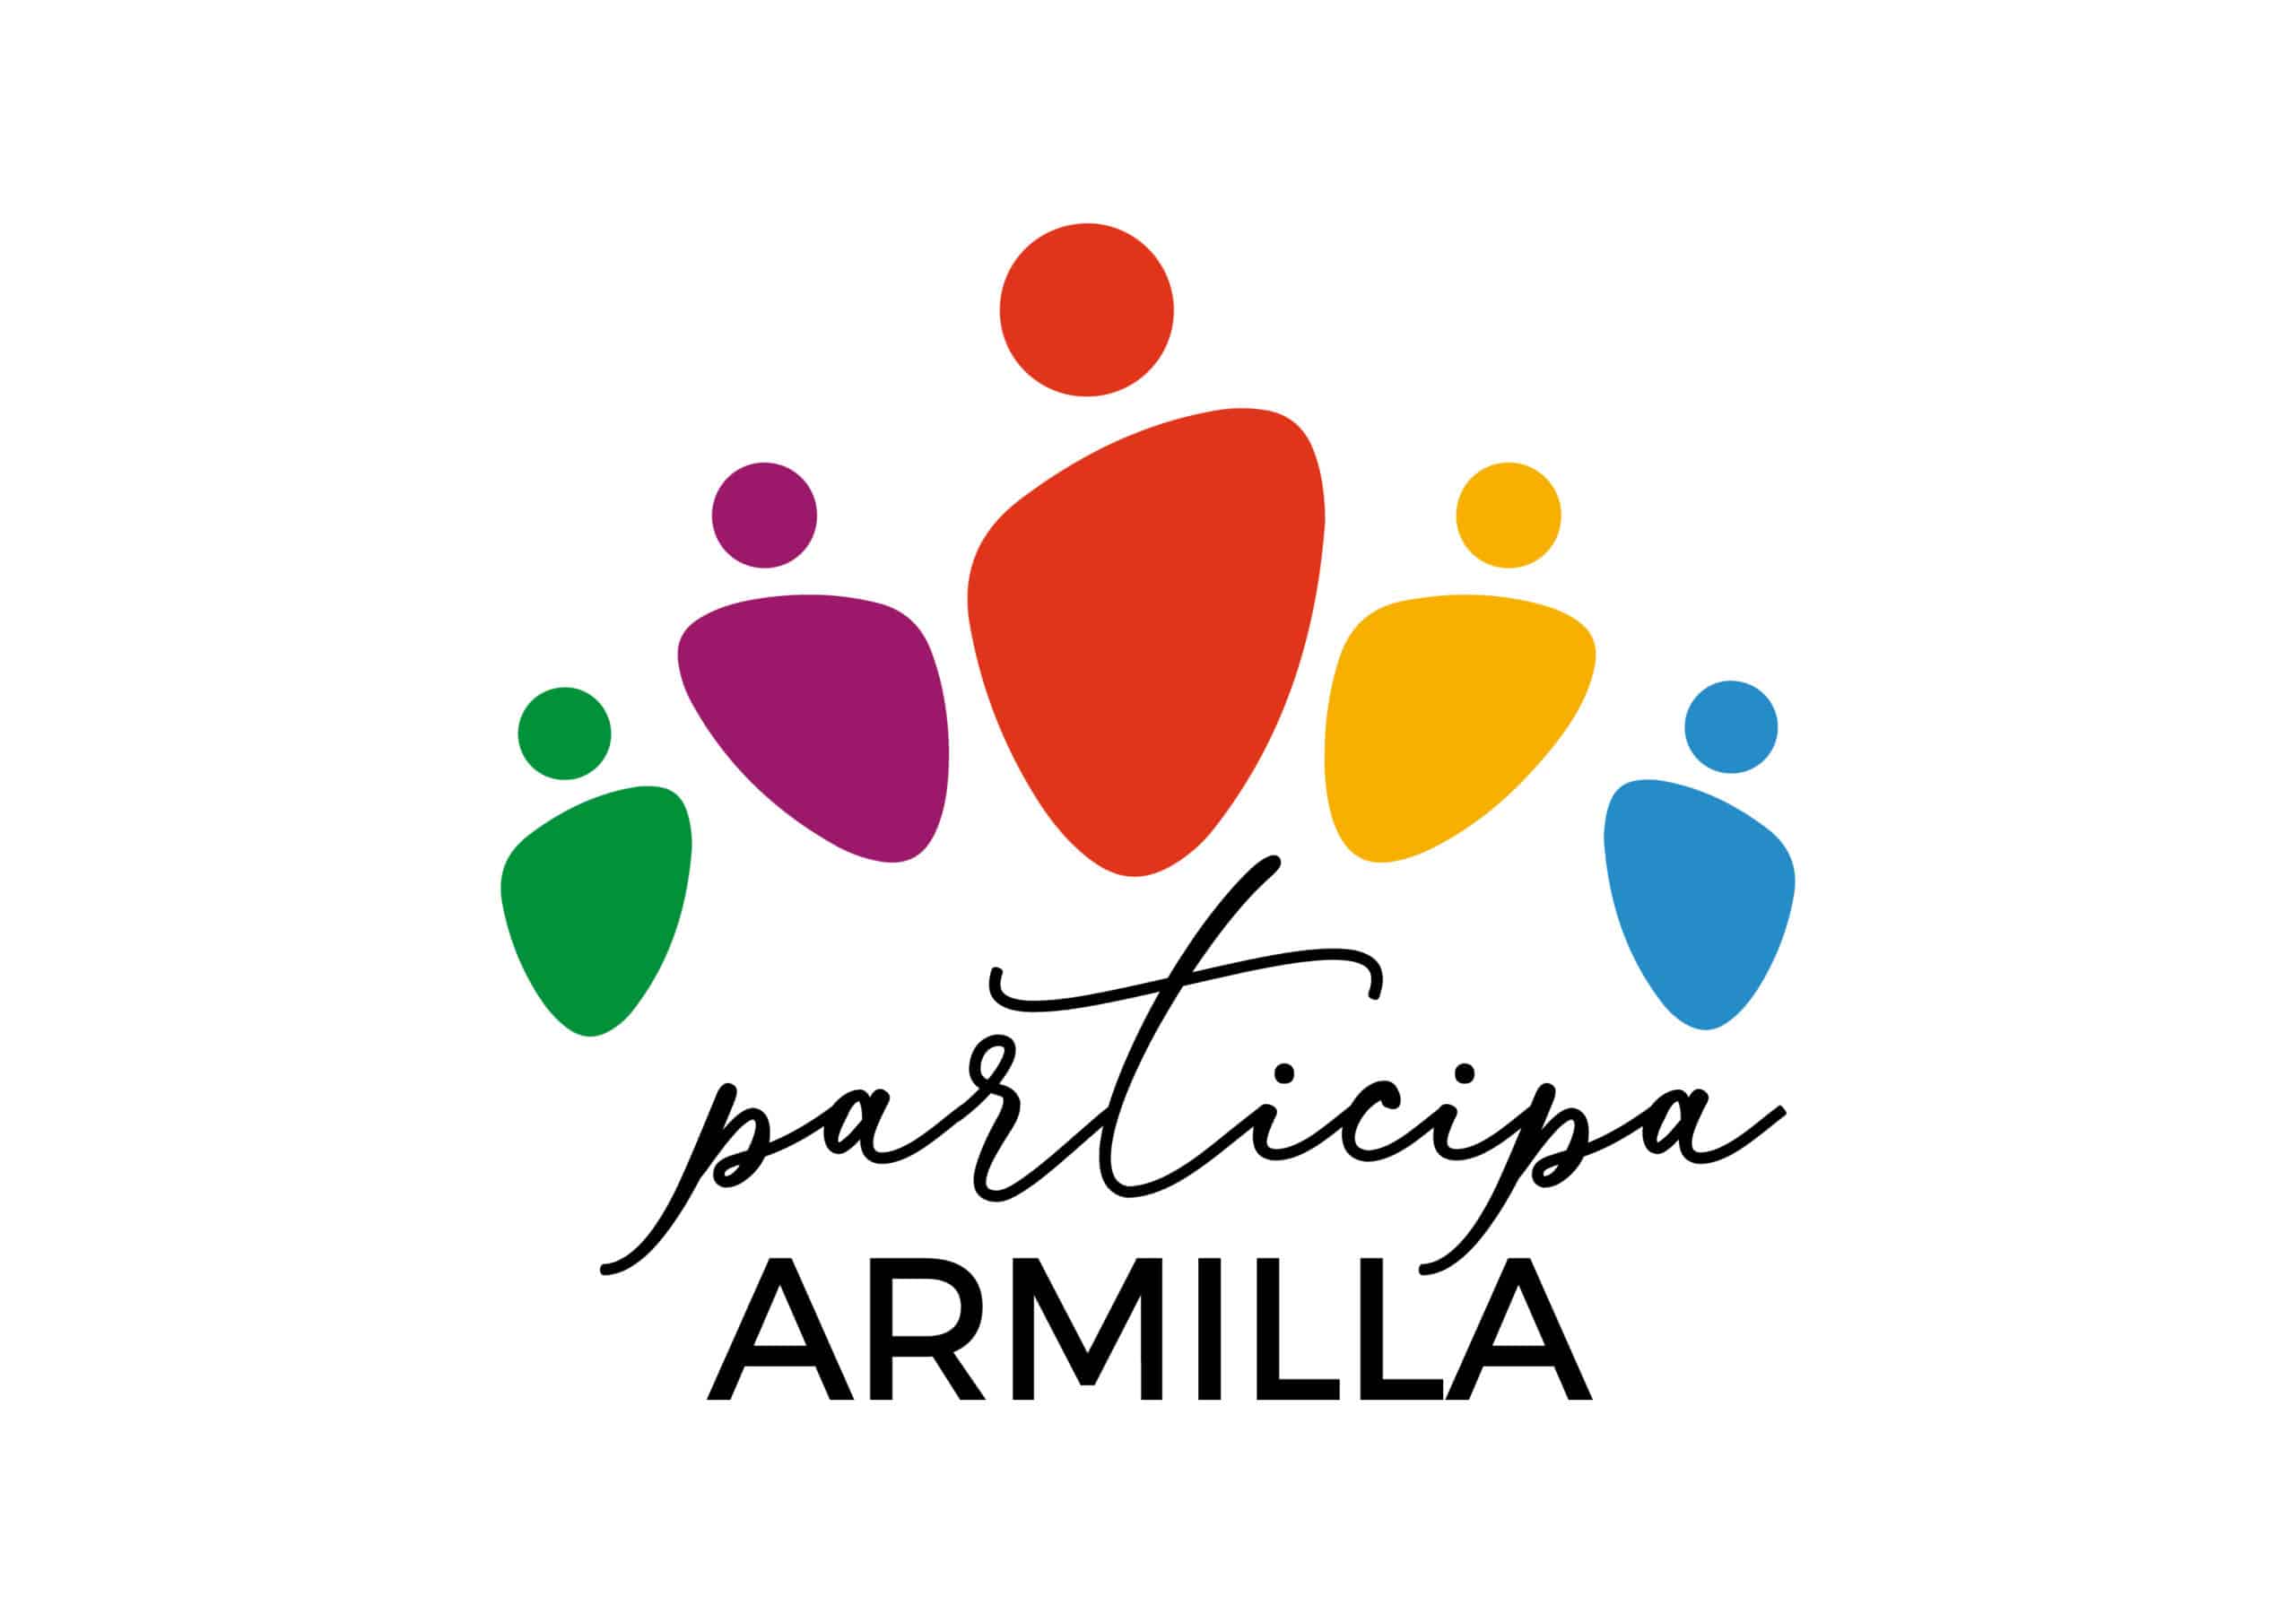 Participa Armilla 01 01